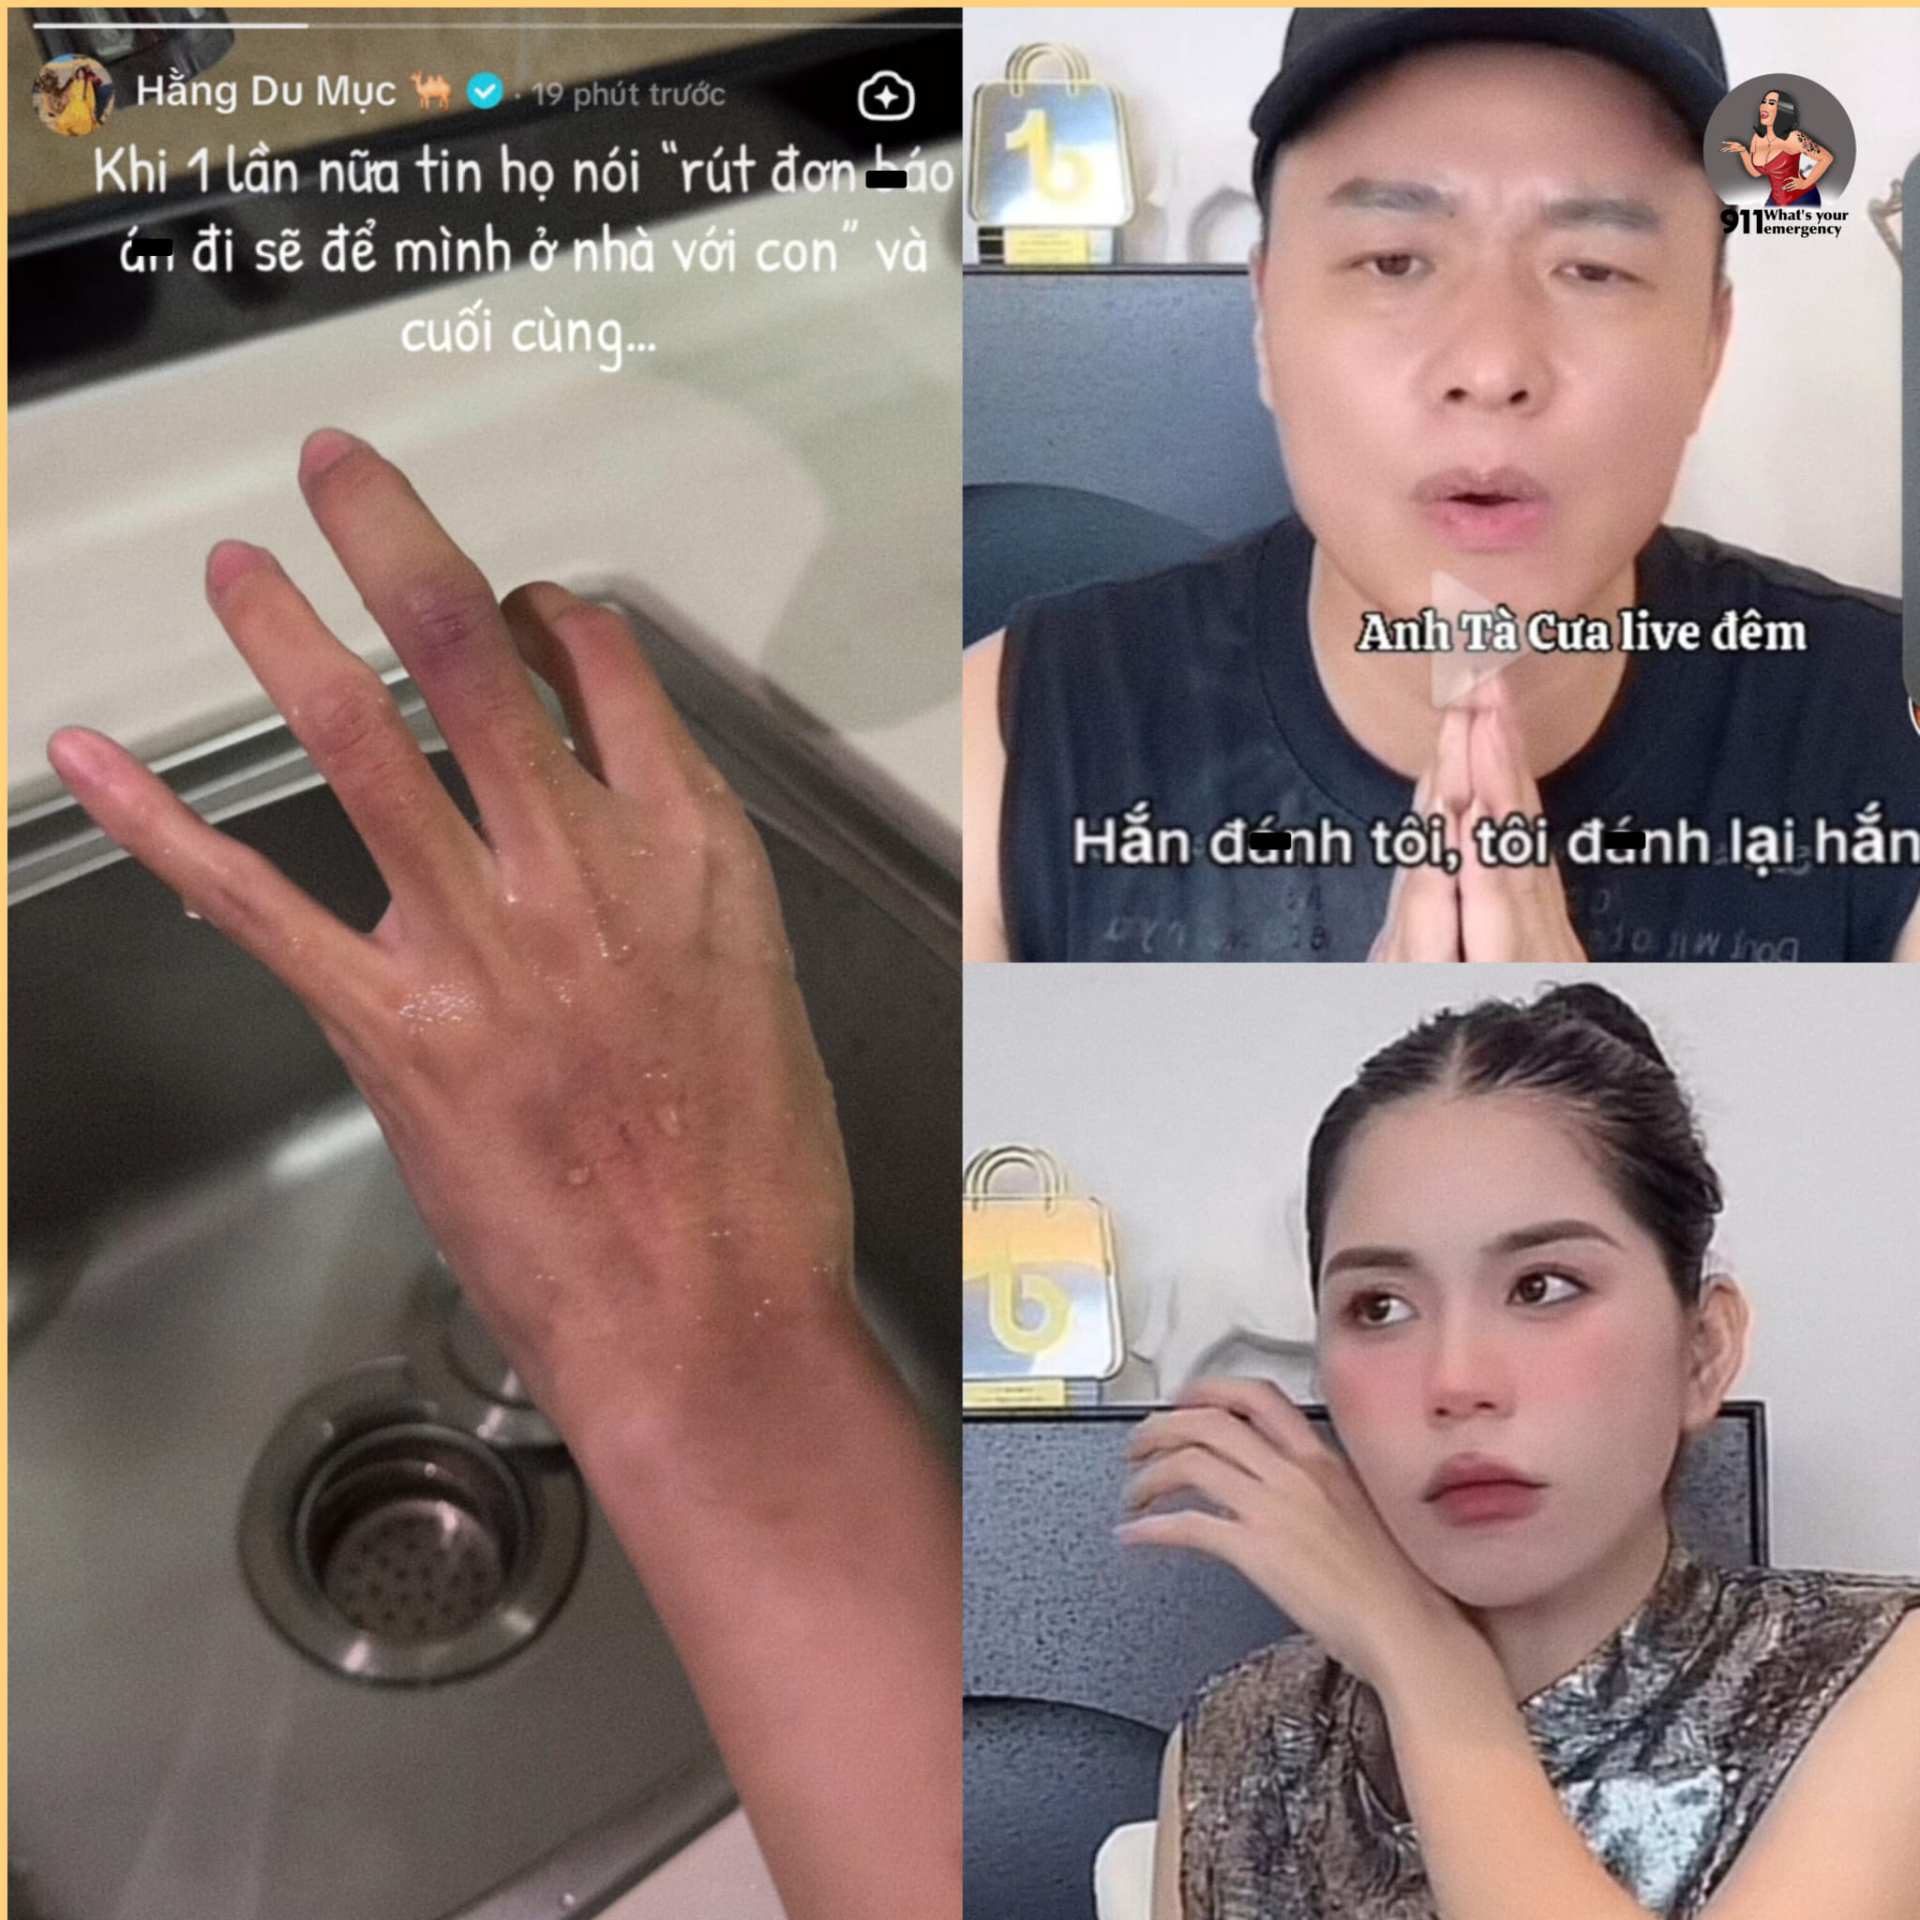 Hằng Du Mục bị chồng 'tương tác', Quang Linh Vlog ẩn ý 'Về nhà thôi' khiến netizen mong sớm ngày hội ngộ - ảnh 2